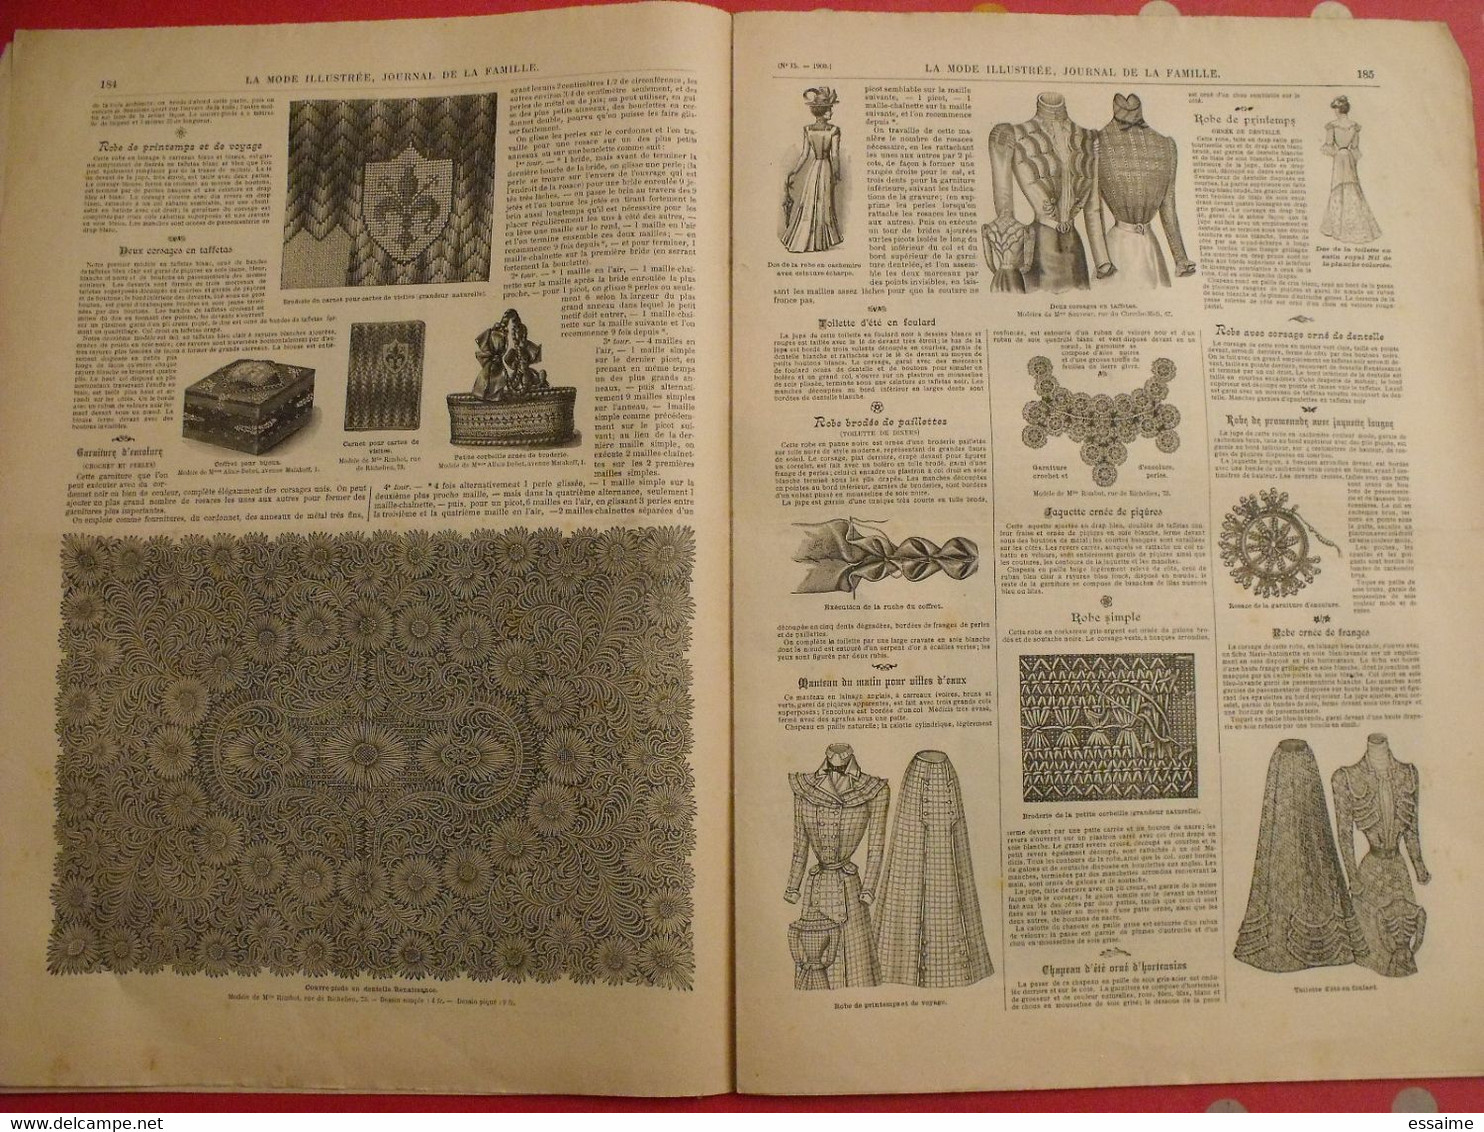 4 revues la mode illustrée, journal de la famille.  n° 15,16,17,18 de 1900. couverture en couleur. jolies gravures